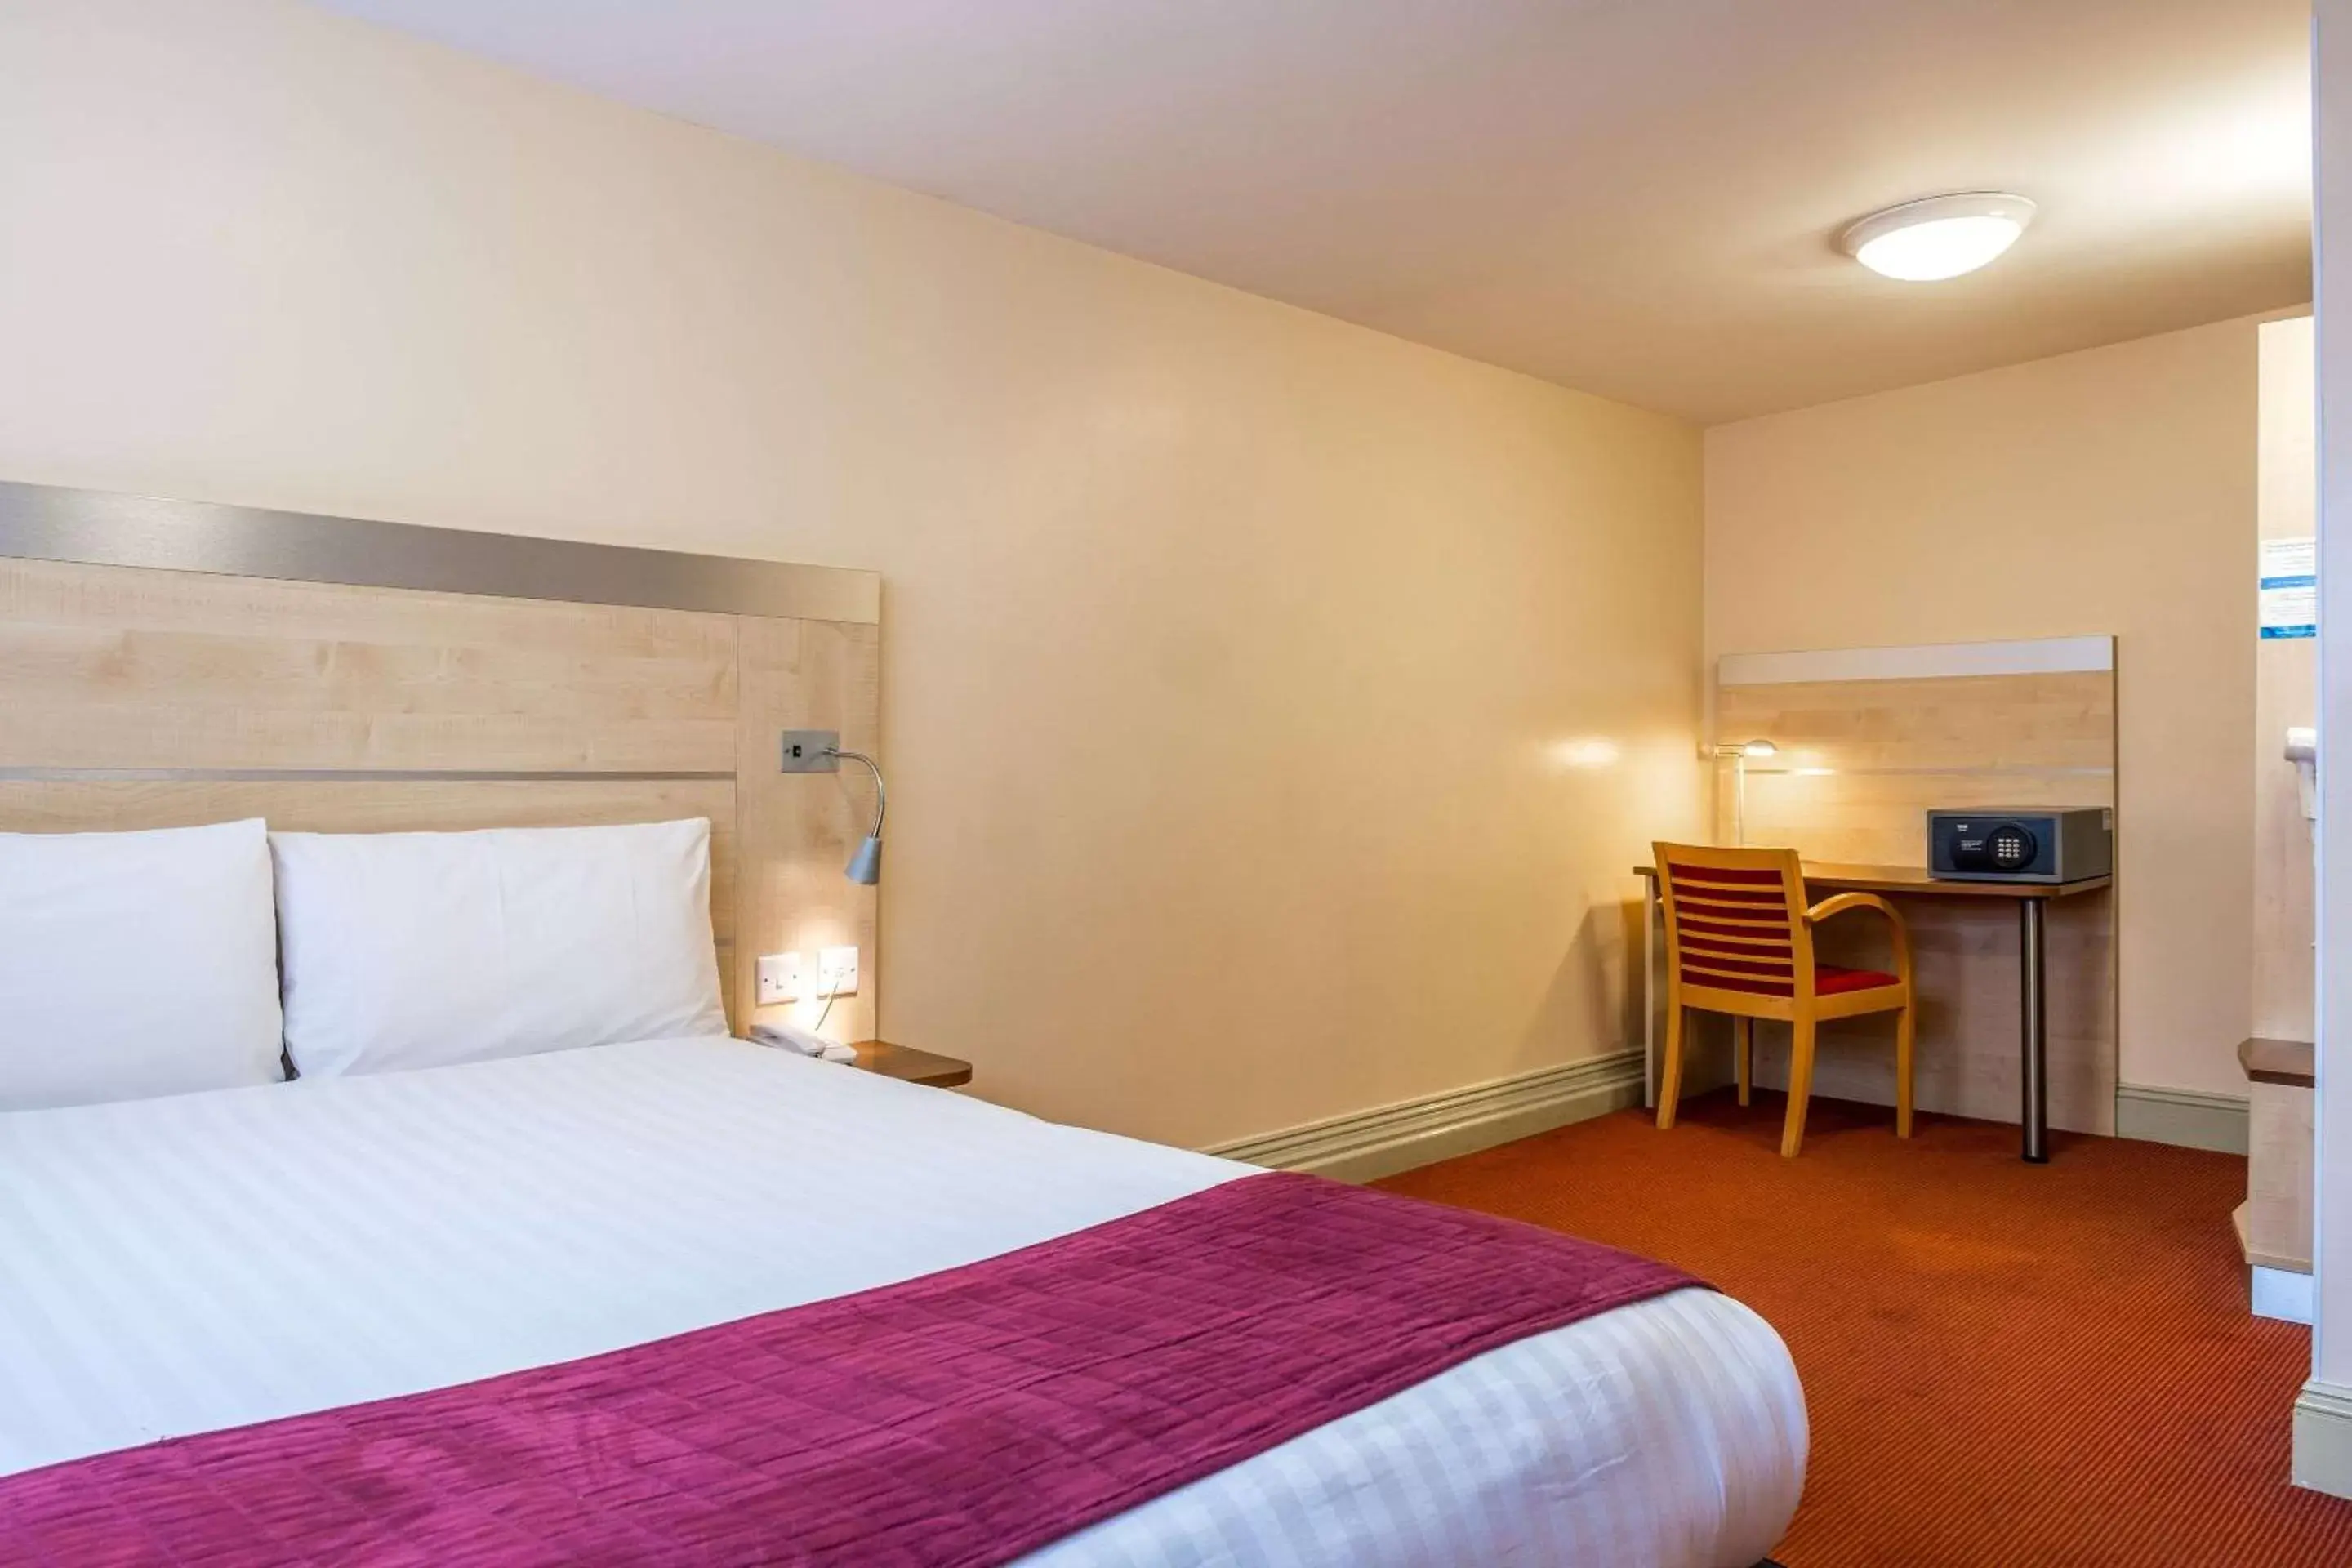 Bedroom, Bed in Comfort Inn Edgware Road W2